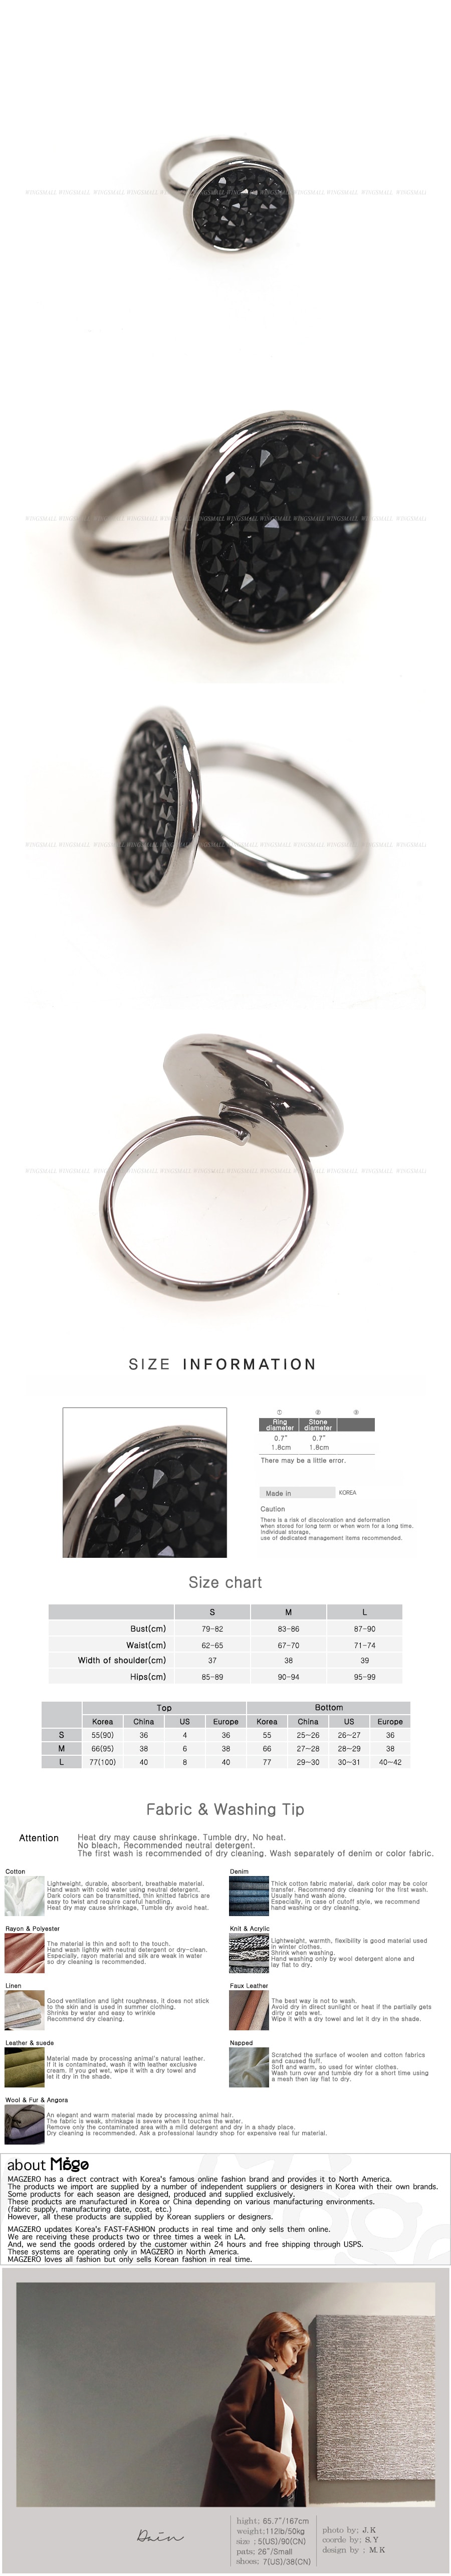 KOREA Black Cubic Metal Ring [Free Shipping]